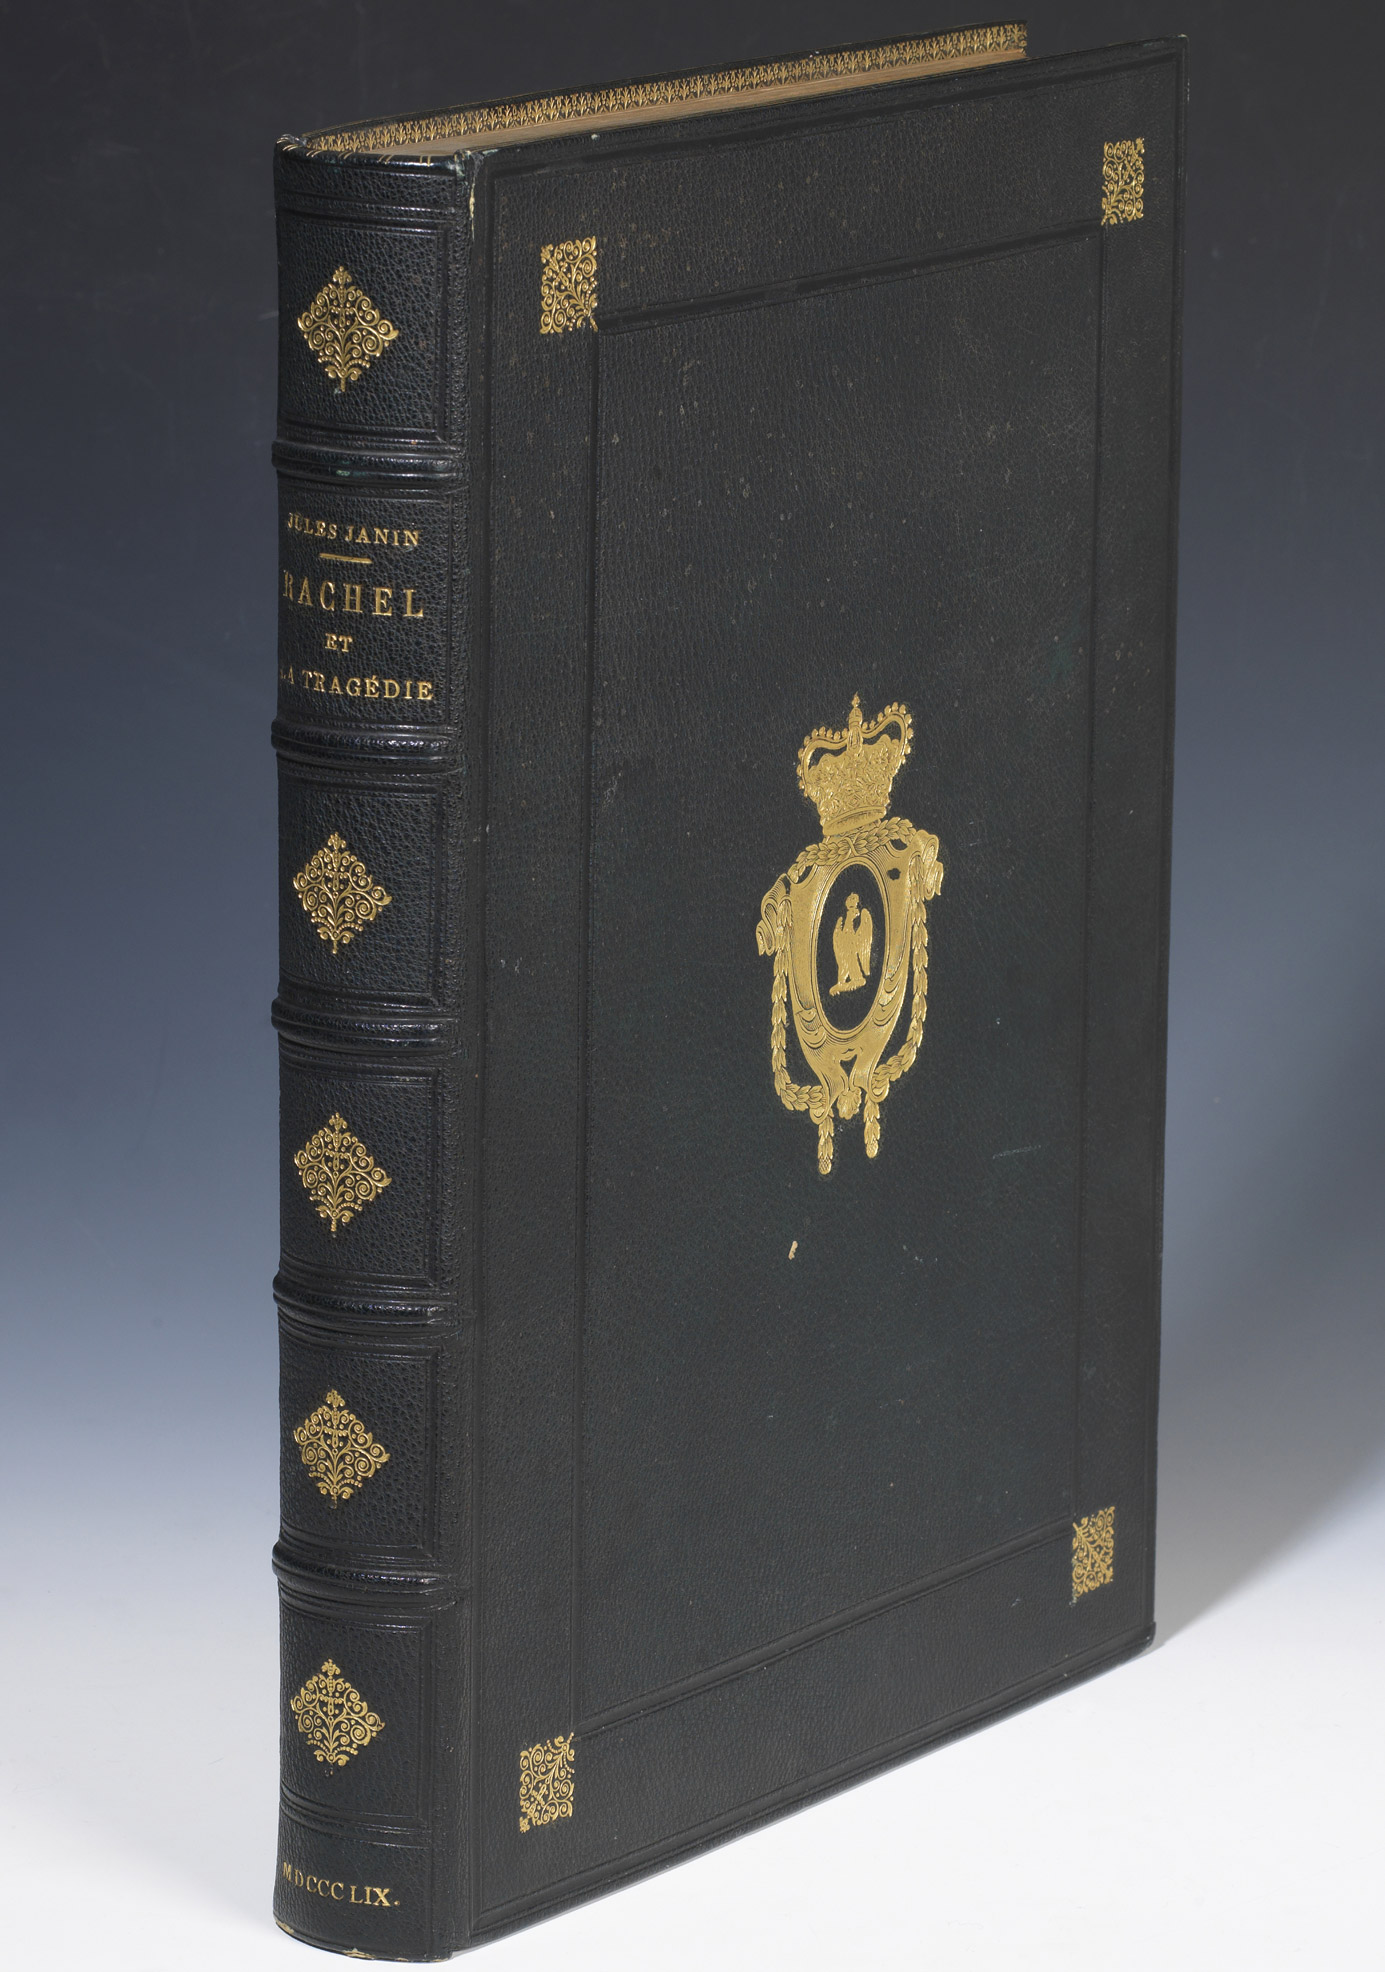 "Rachel et la tragédie", exemplaire de Napoléon III - Patrimoine Charles-André COLONNA WALEWSKI, en ligne directe de Napoléon